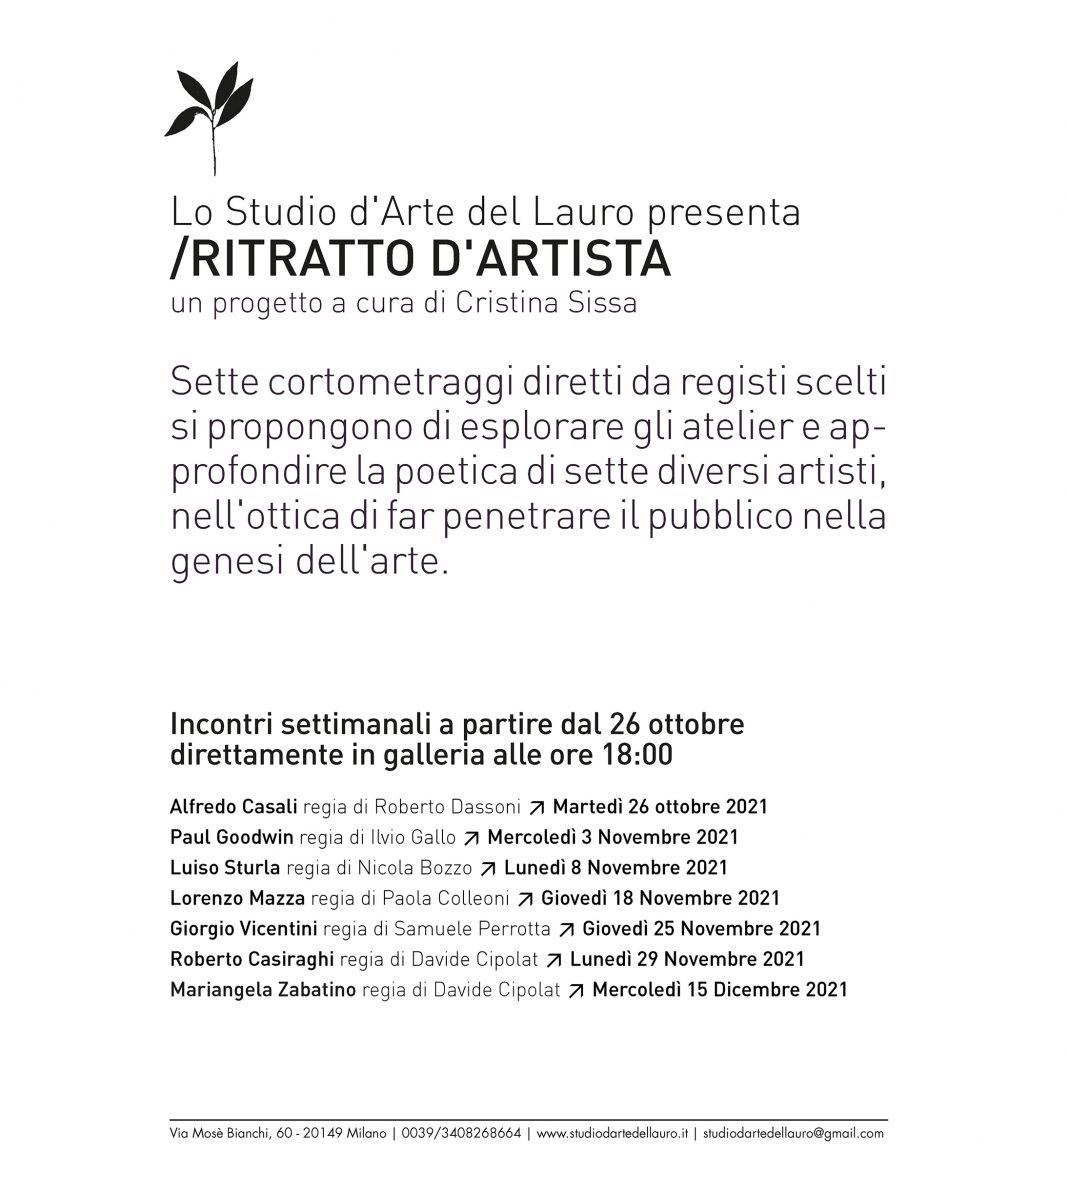 Ritratto d’Artistahttps://www.exibart.com/repository/media/formidable/11/img/2f5/INVITO-Ritratto-dartista-1068x1192.jpg